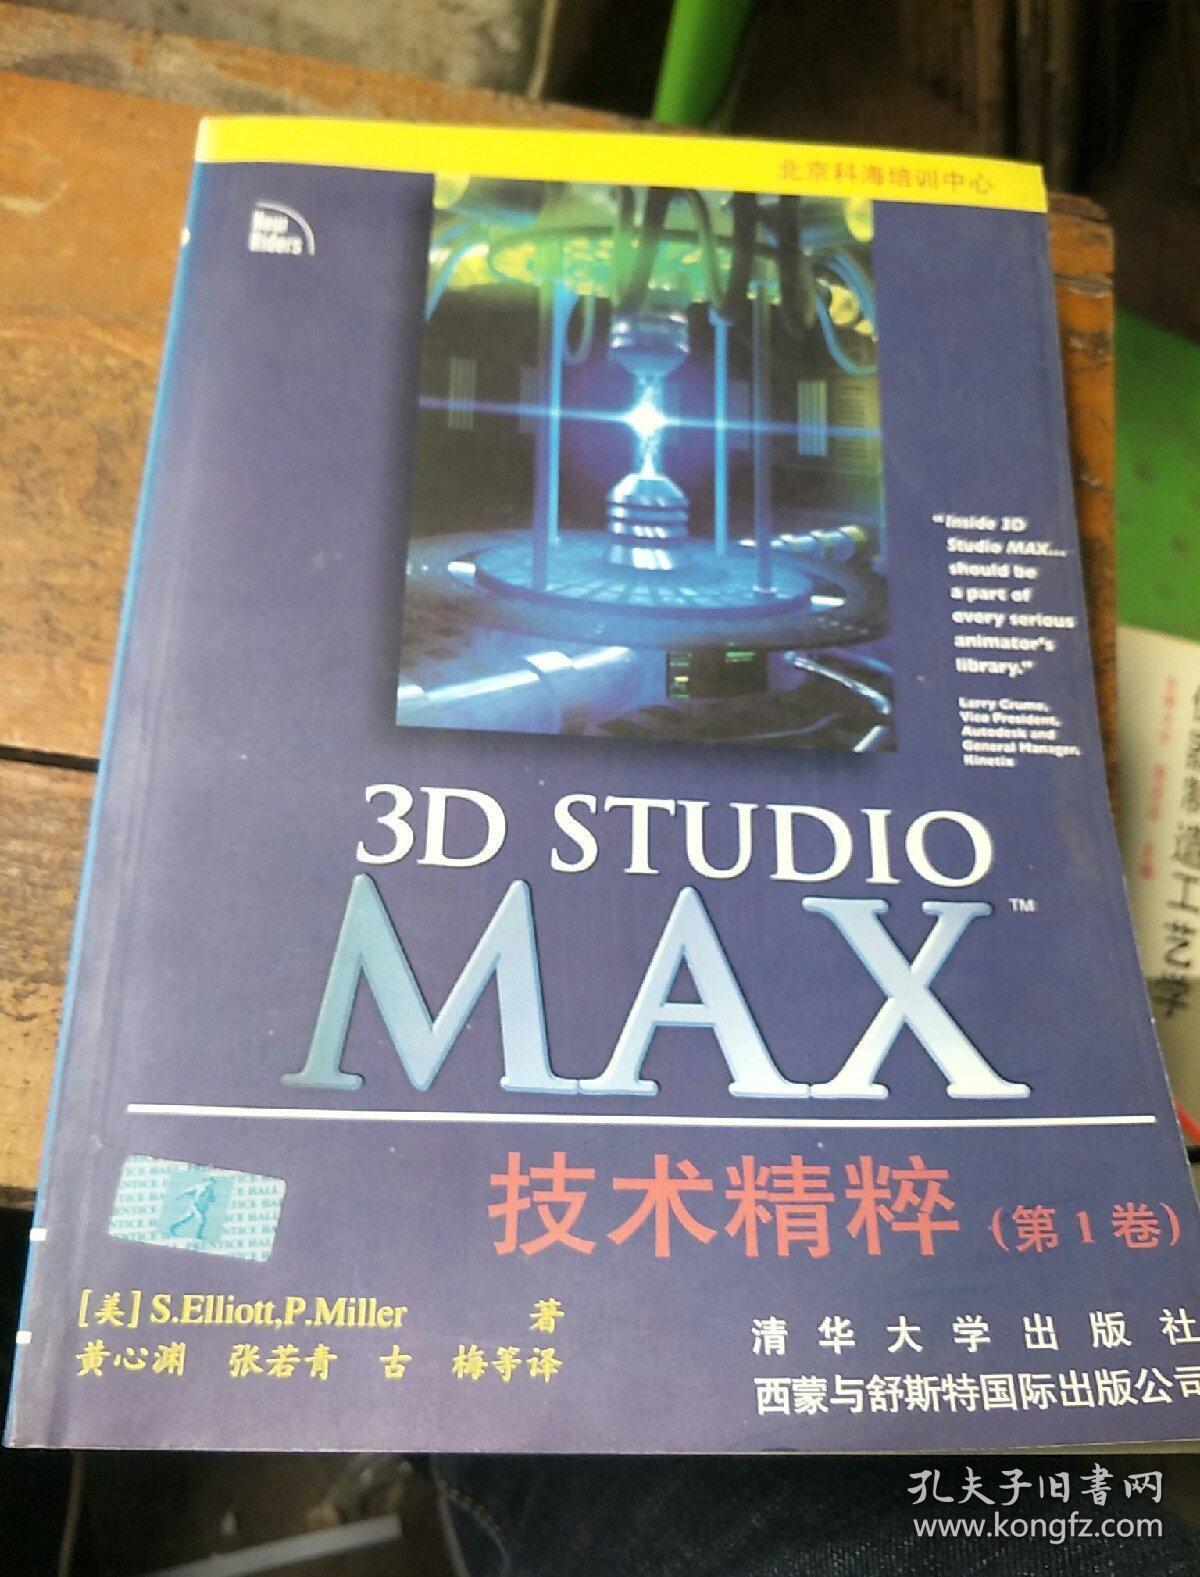 3D Studio MAX技术精粹.第1卷